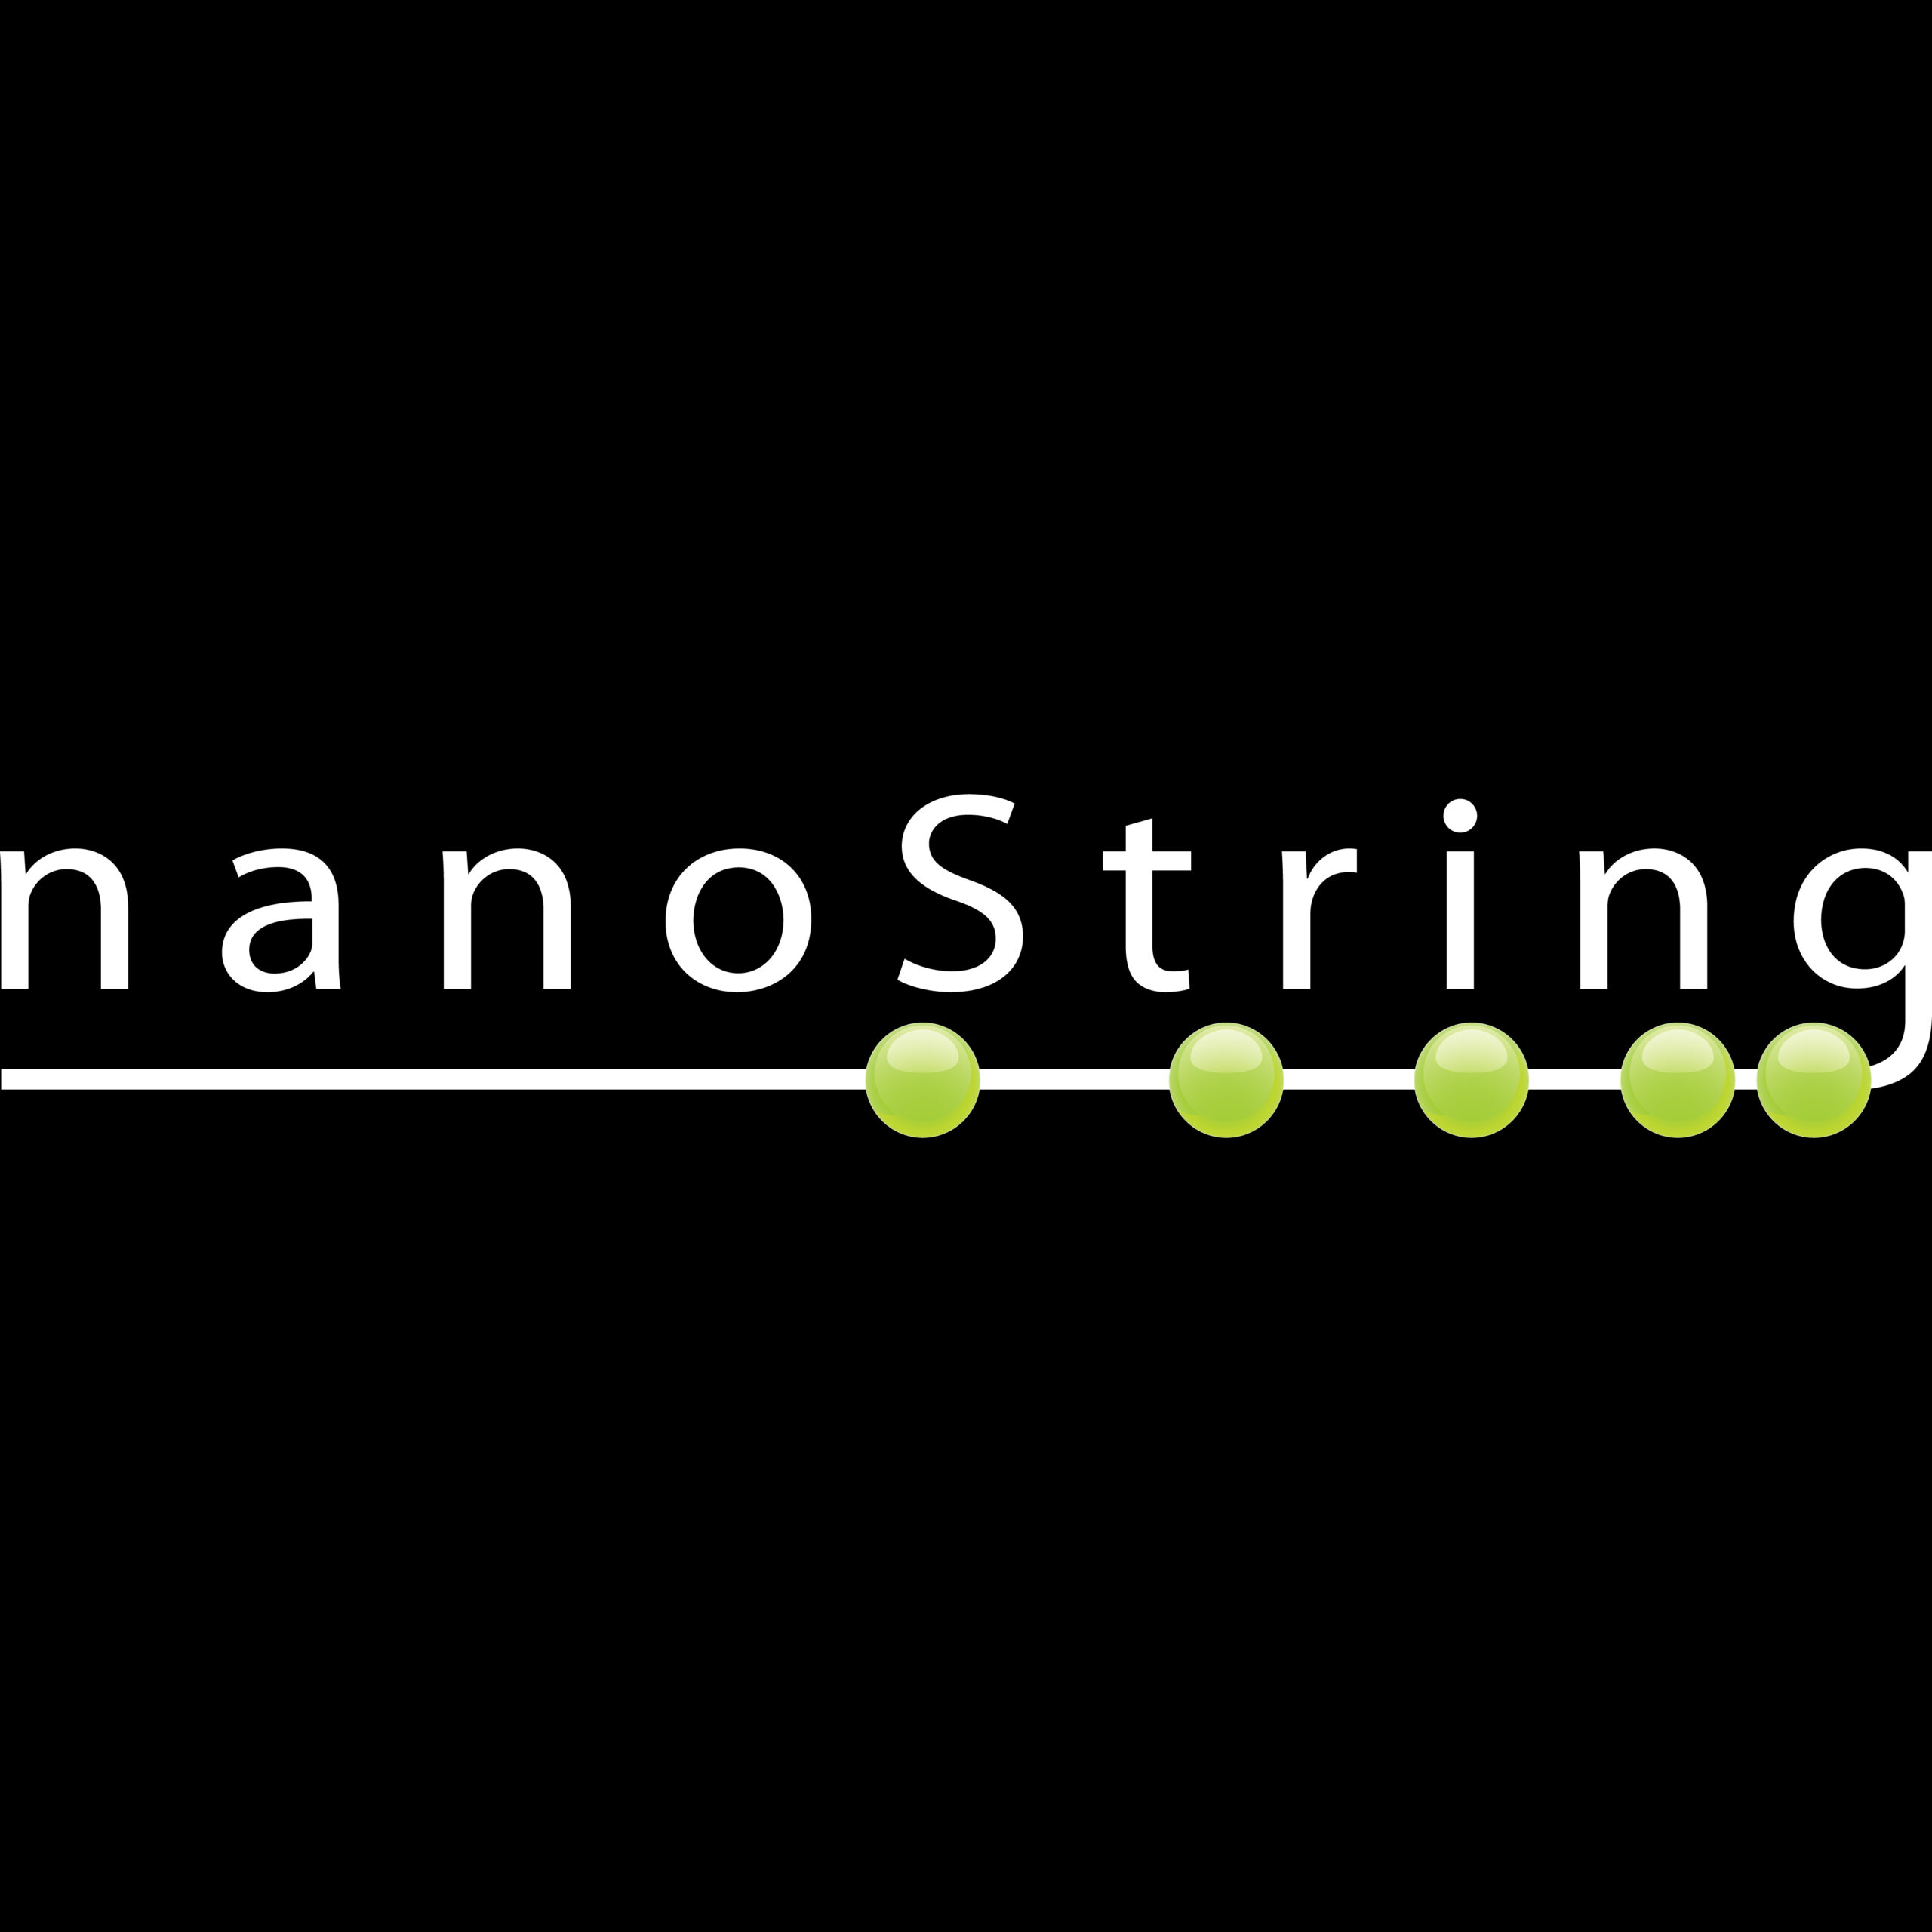 nanoString-01